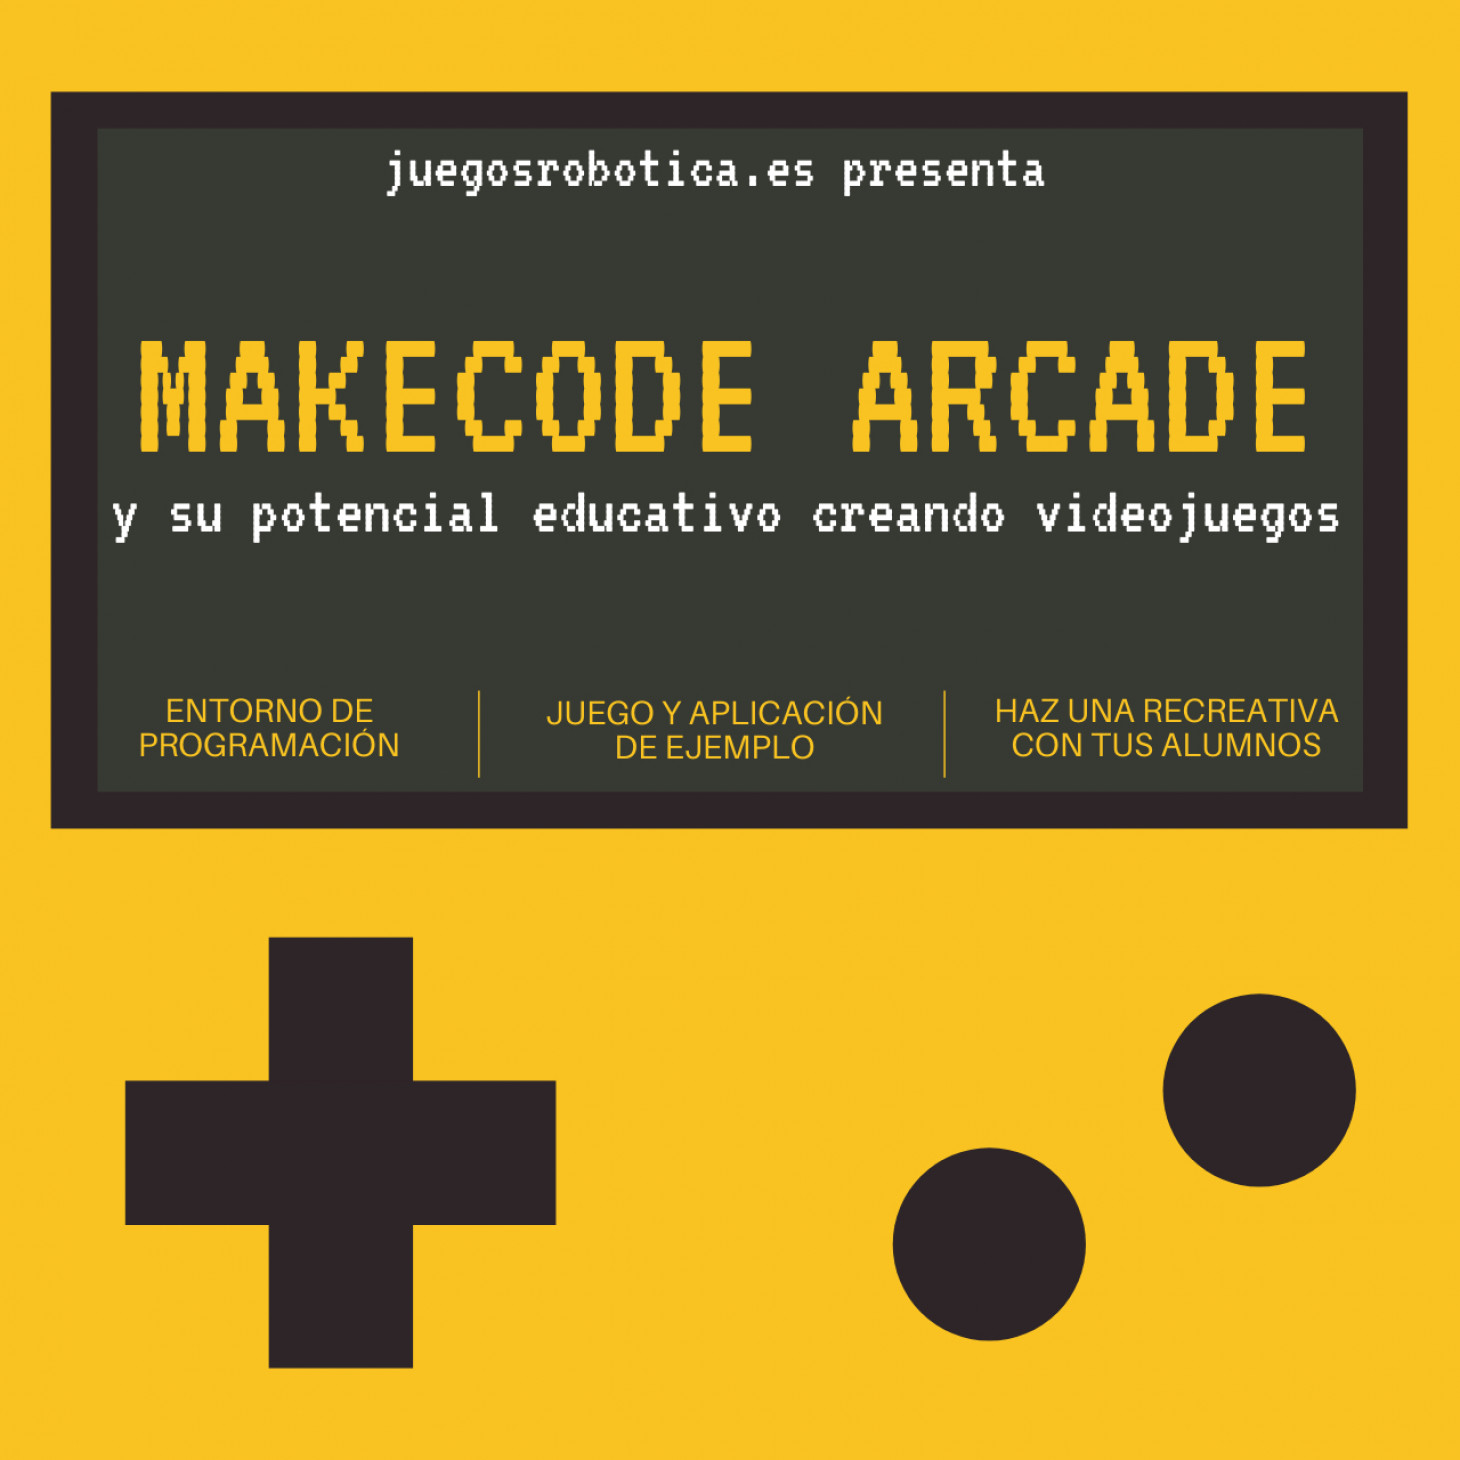 Conociendo Makecode Arcade y su potencial educativo creando videojuegos